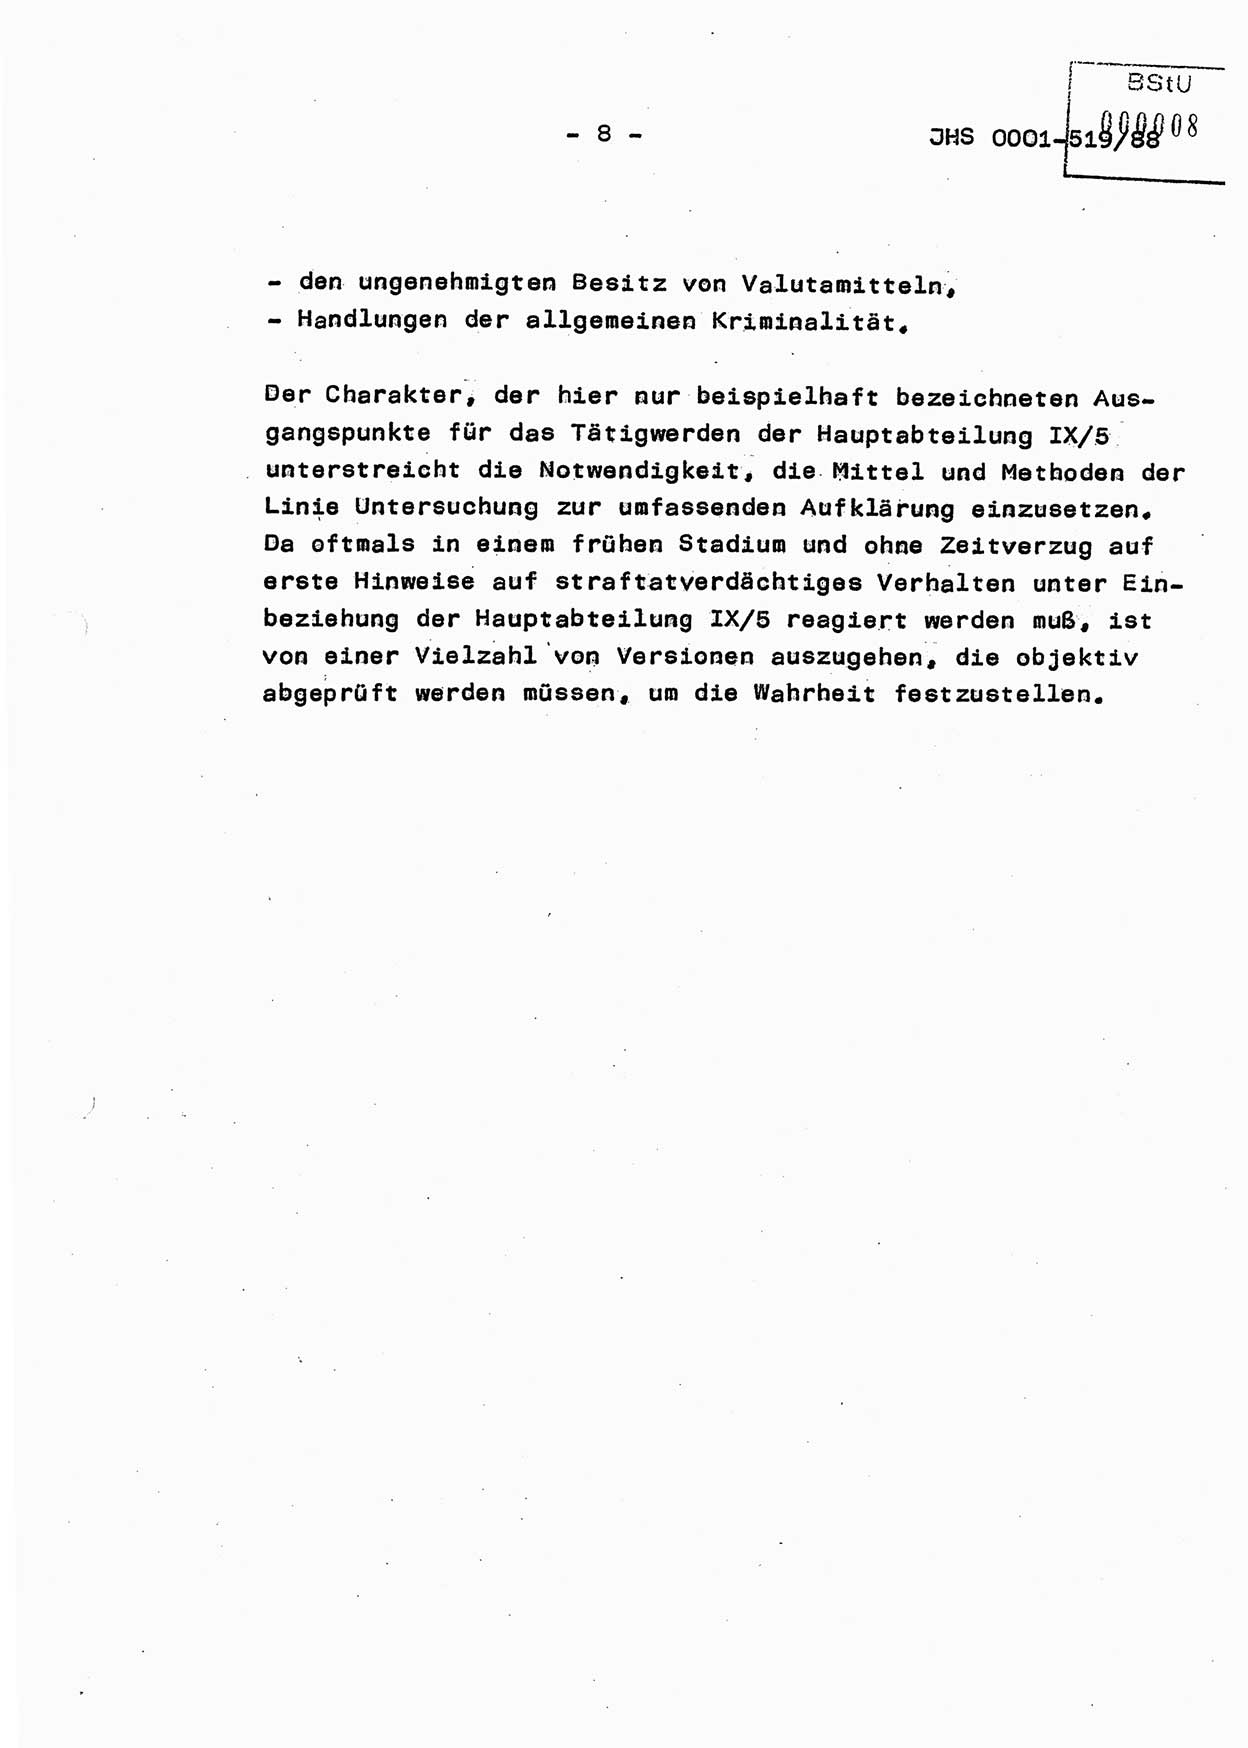 Diplomarbeit, Hauptmann Michael Eisermann (HA Ⅸ/5), Ministerium für Staatssicherheit (MfS) [Deutsche Demokratische Republik (DDR)], Juristische Hochschule (JHS), Vertrauliche Verschlußsache (VVS) o001-519/88, Potsdam 1988, Seite 8 (Dipl.-Arb. MfS DDR JHS VVS o001-519/88 1988, S. 8)